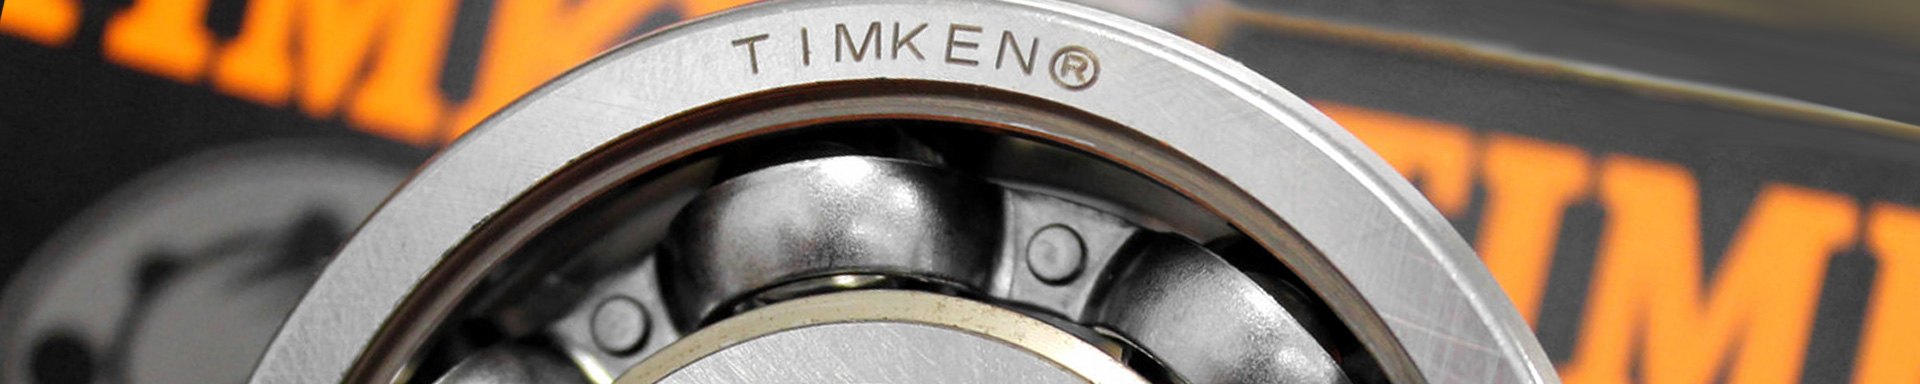 Timken Engine